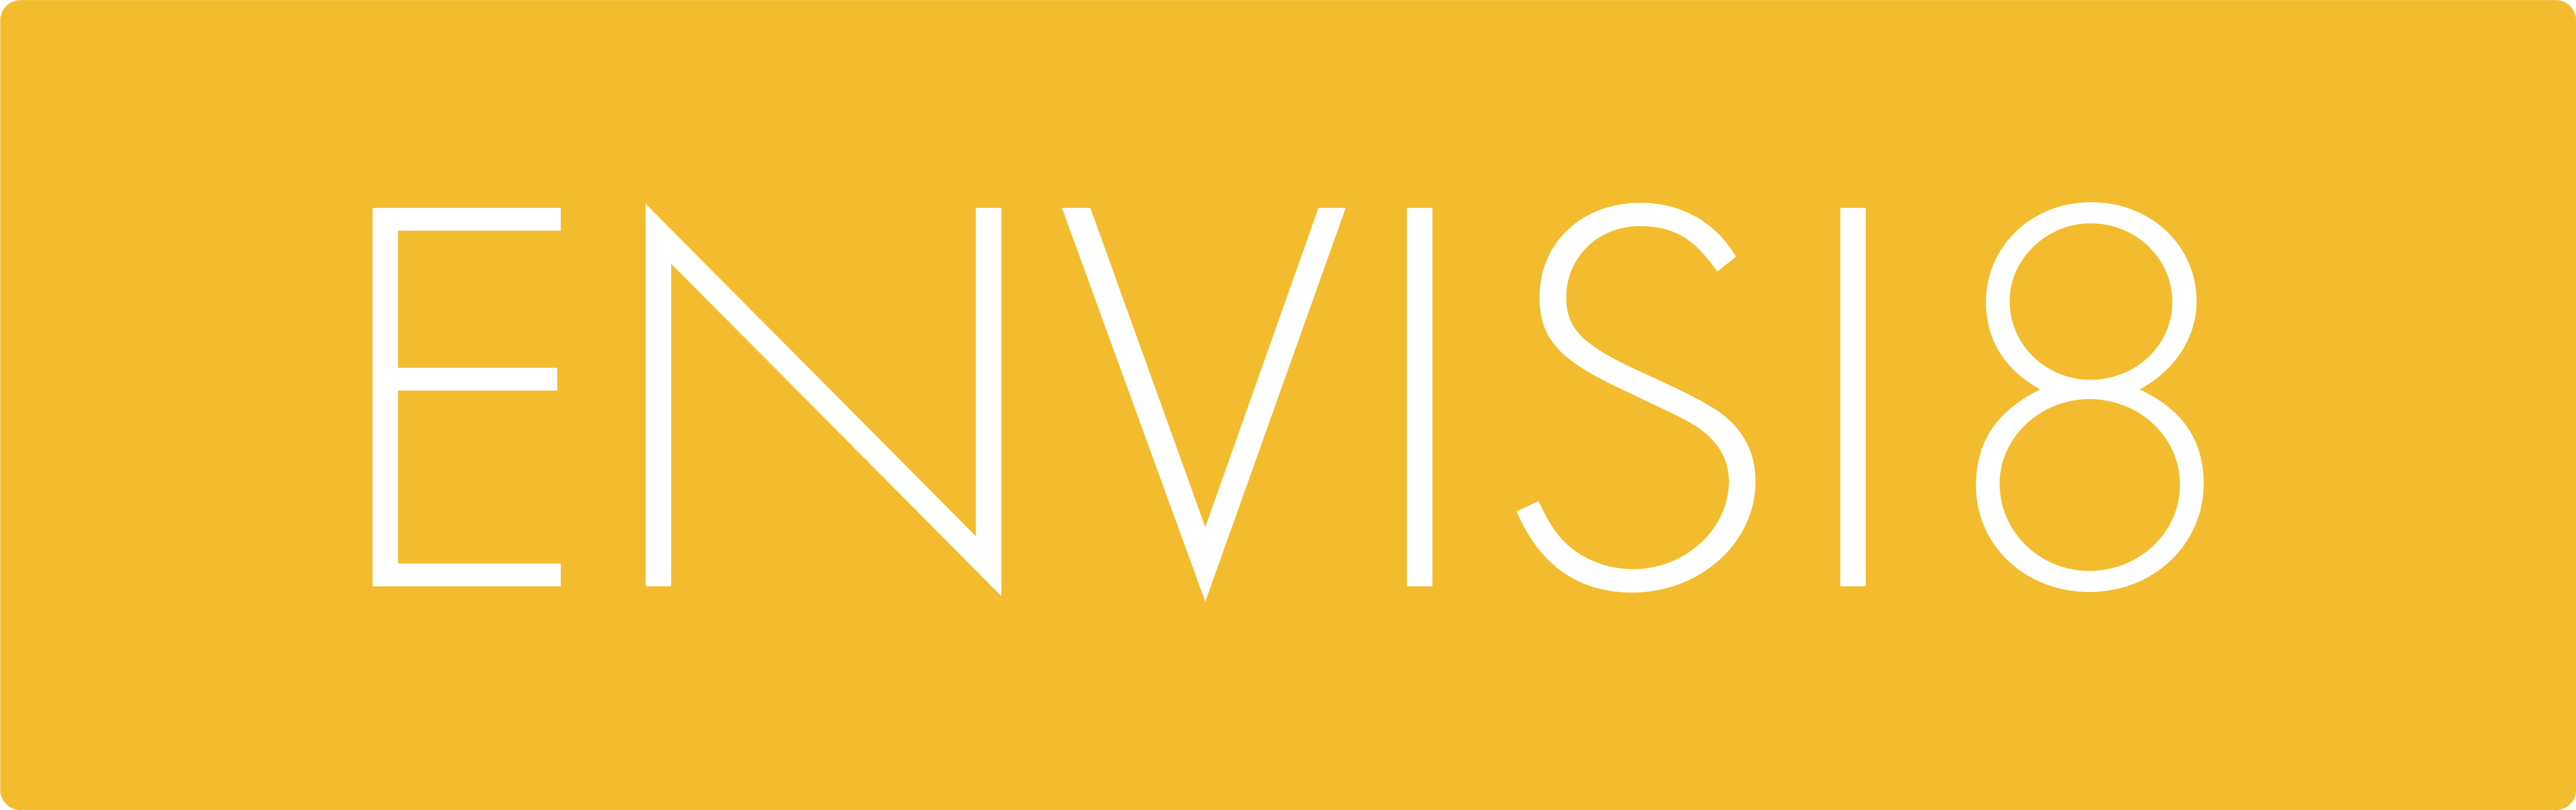 Envisi8 Creative Official Logo Main